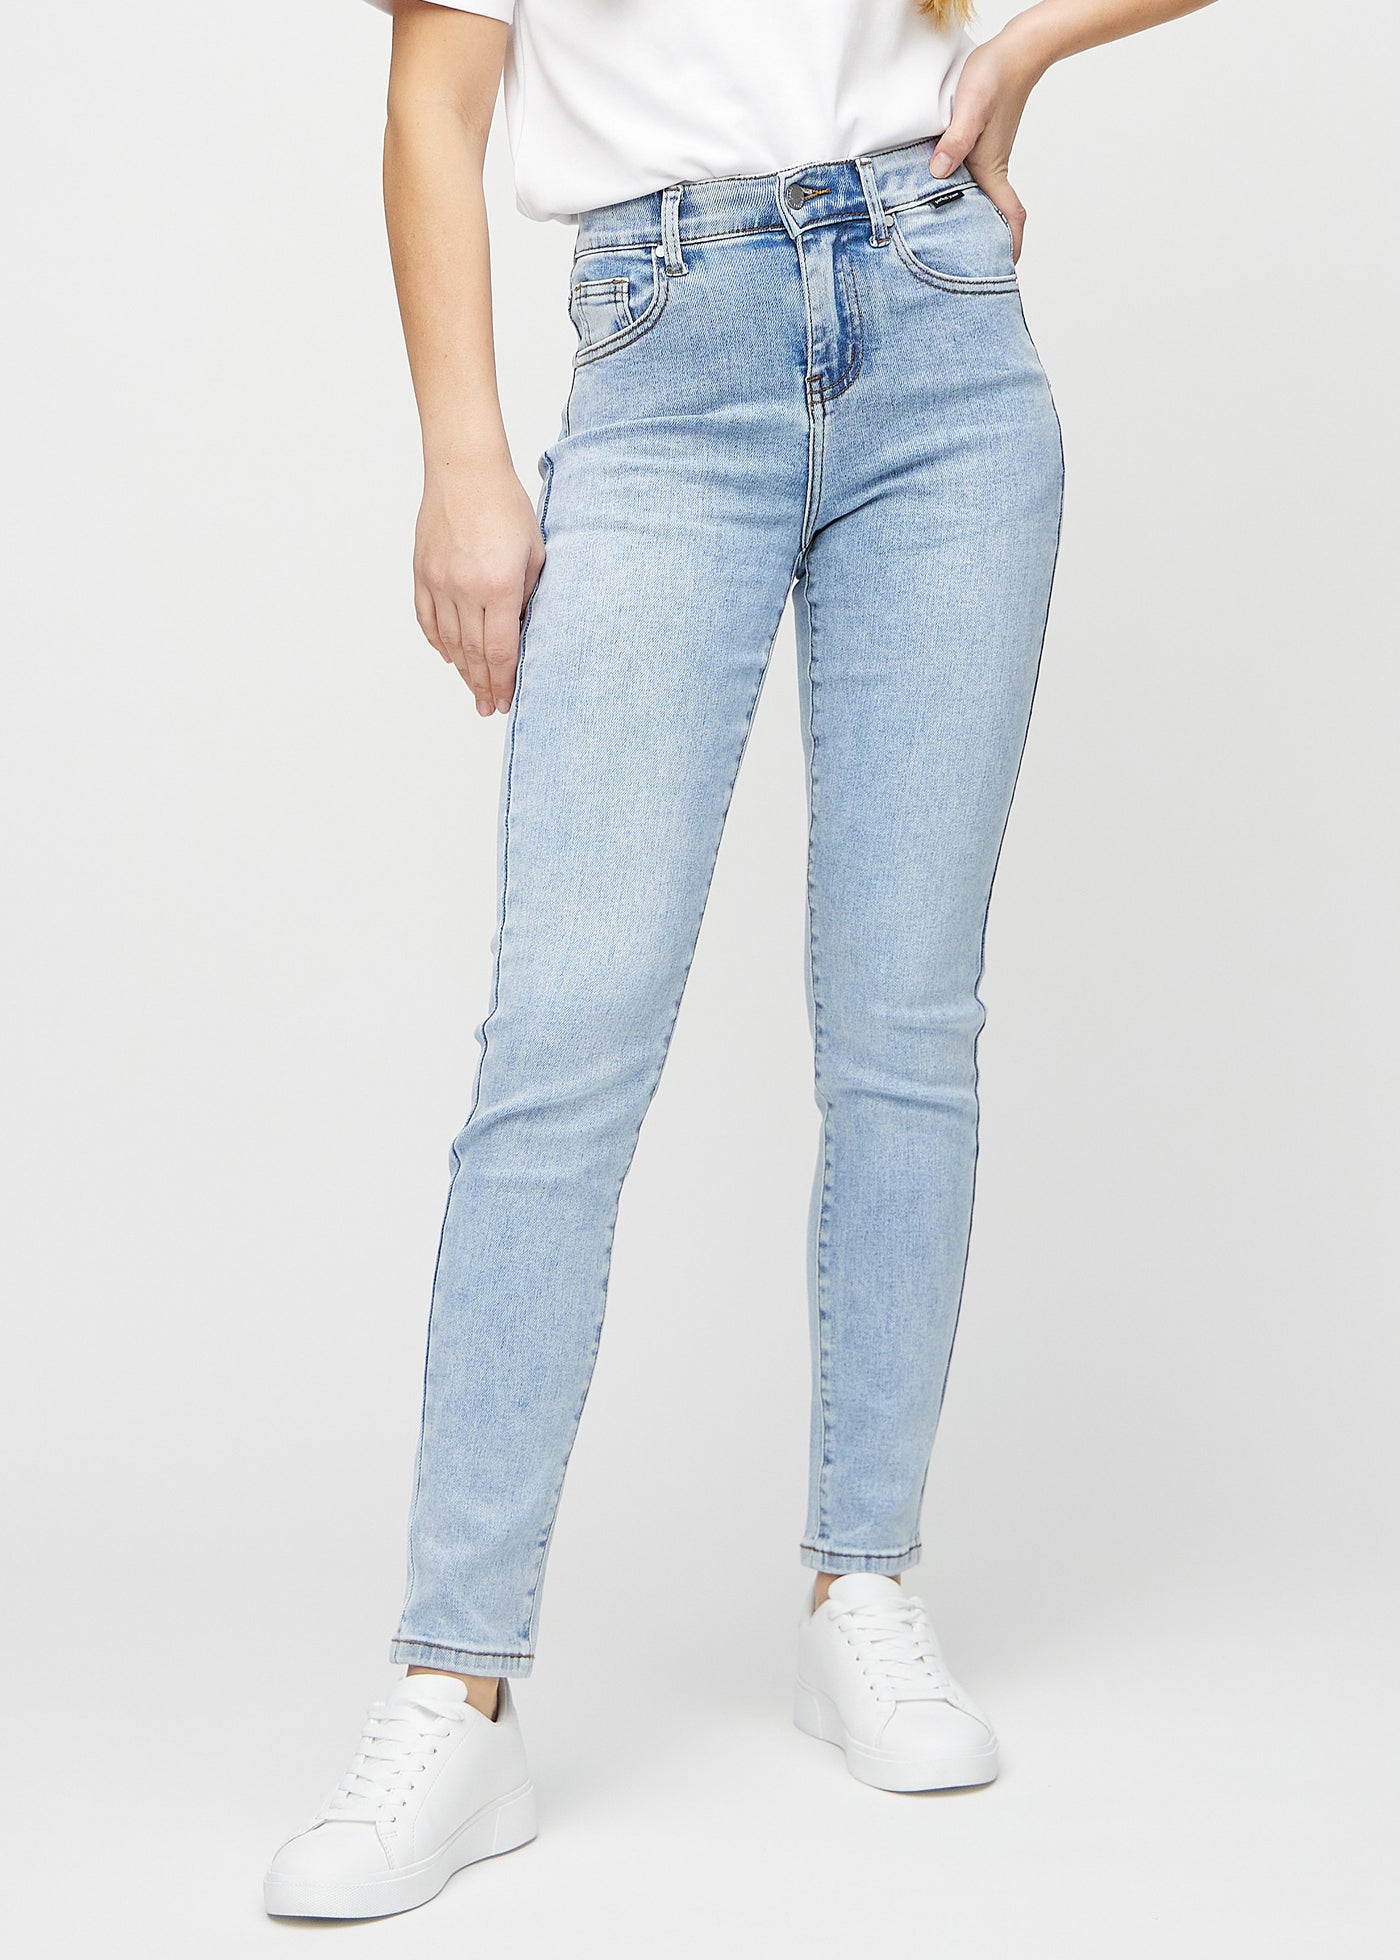 Lys denim slim jeans, modelnavn Waves, som sidder tæt til benet, dog lidt løsere ved anklen, set forfra.